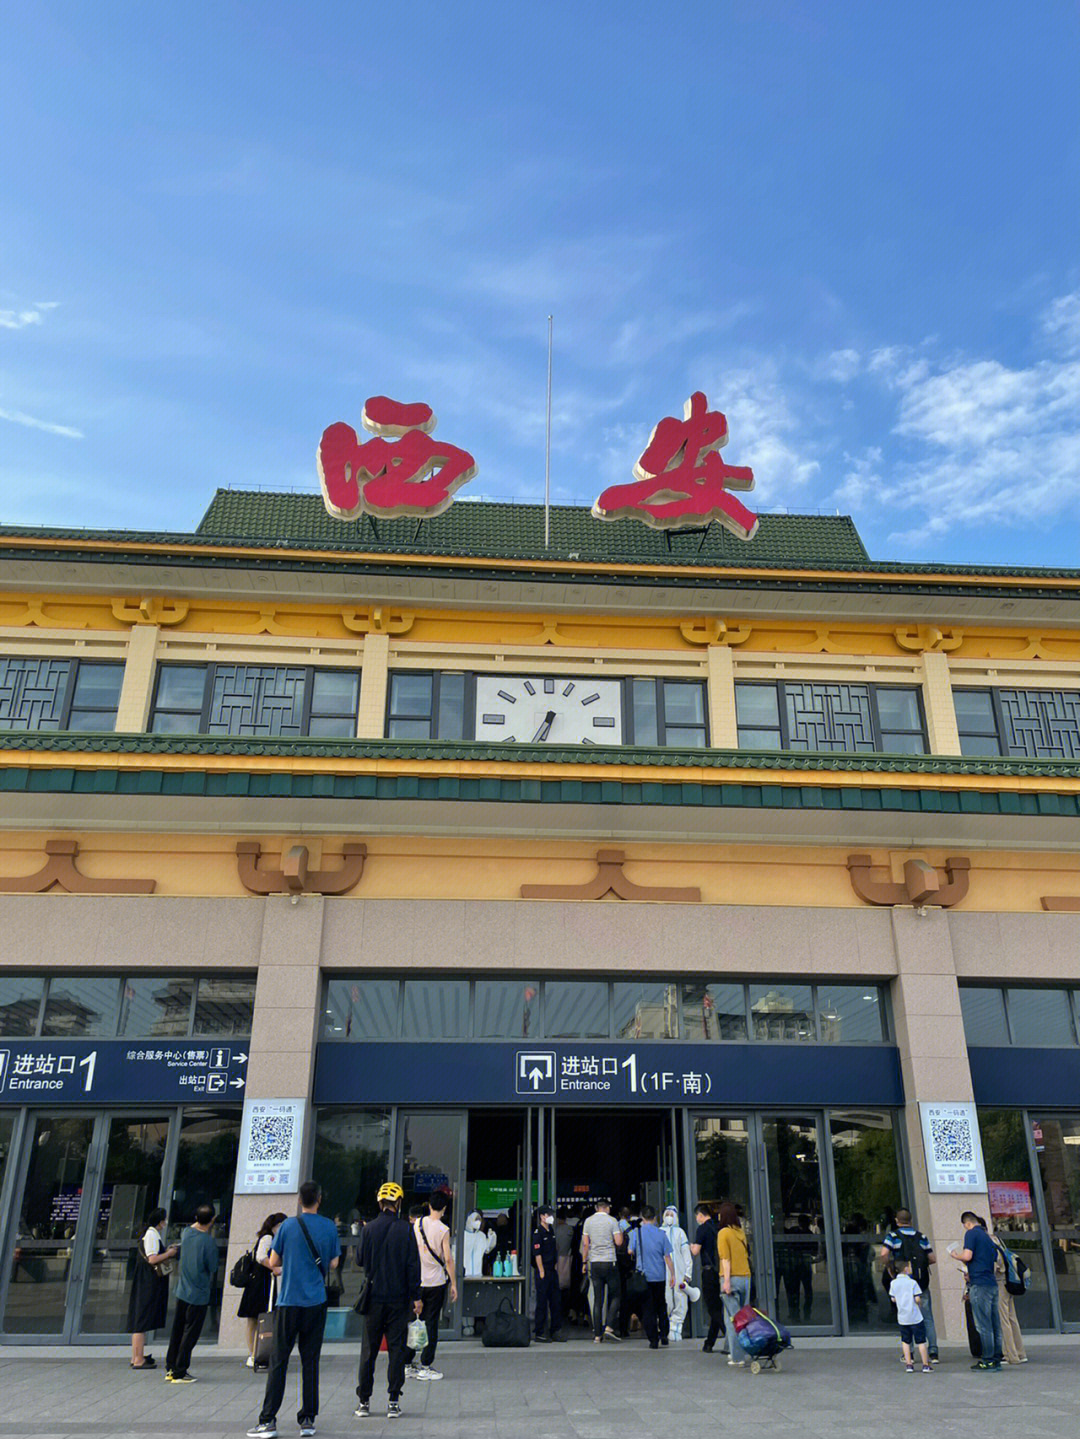 西安火车站照片高清图片